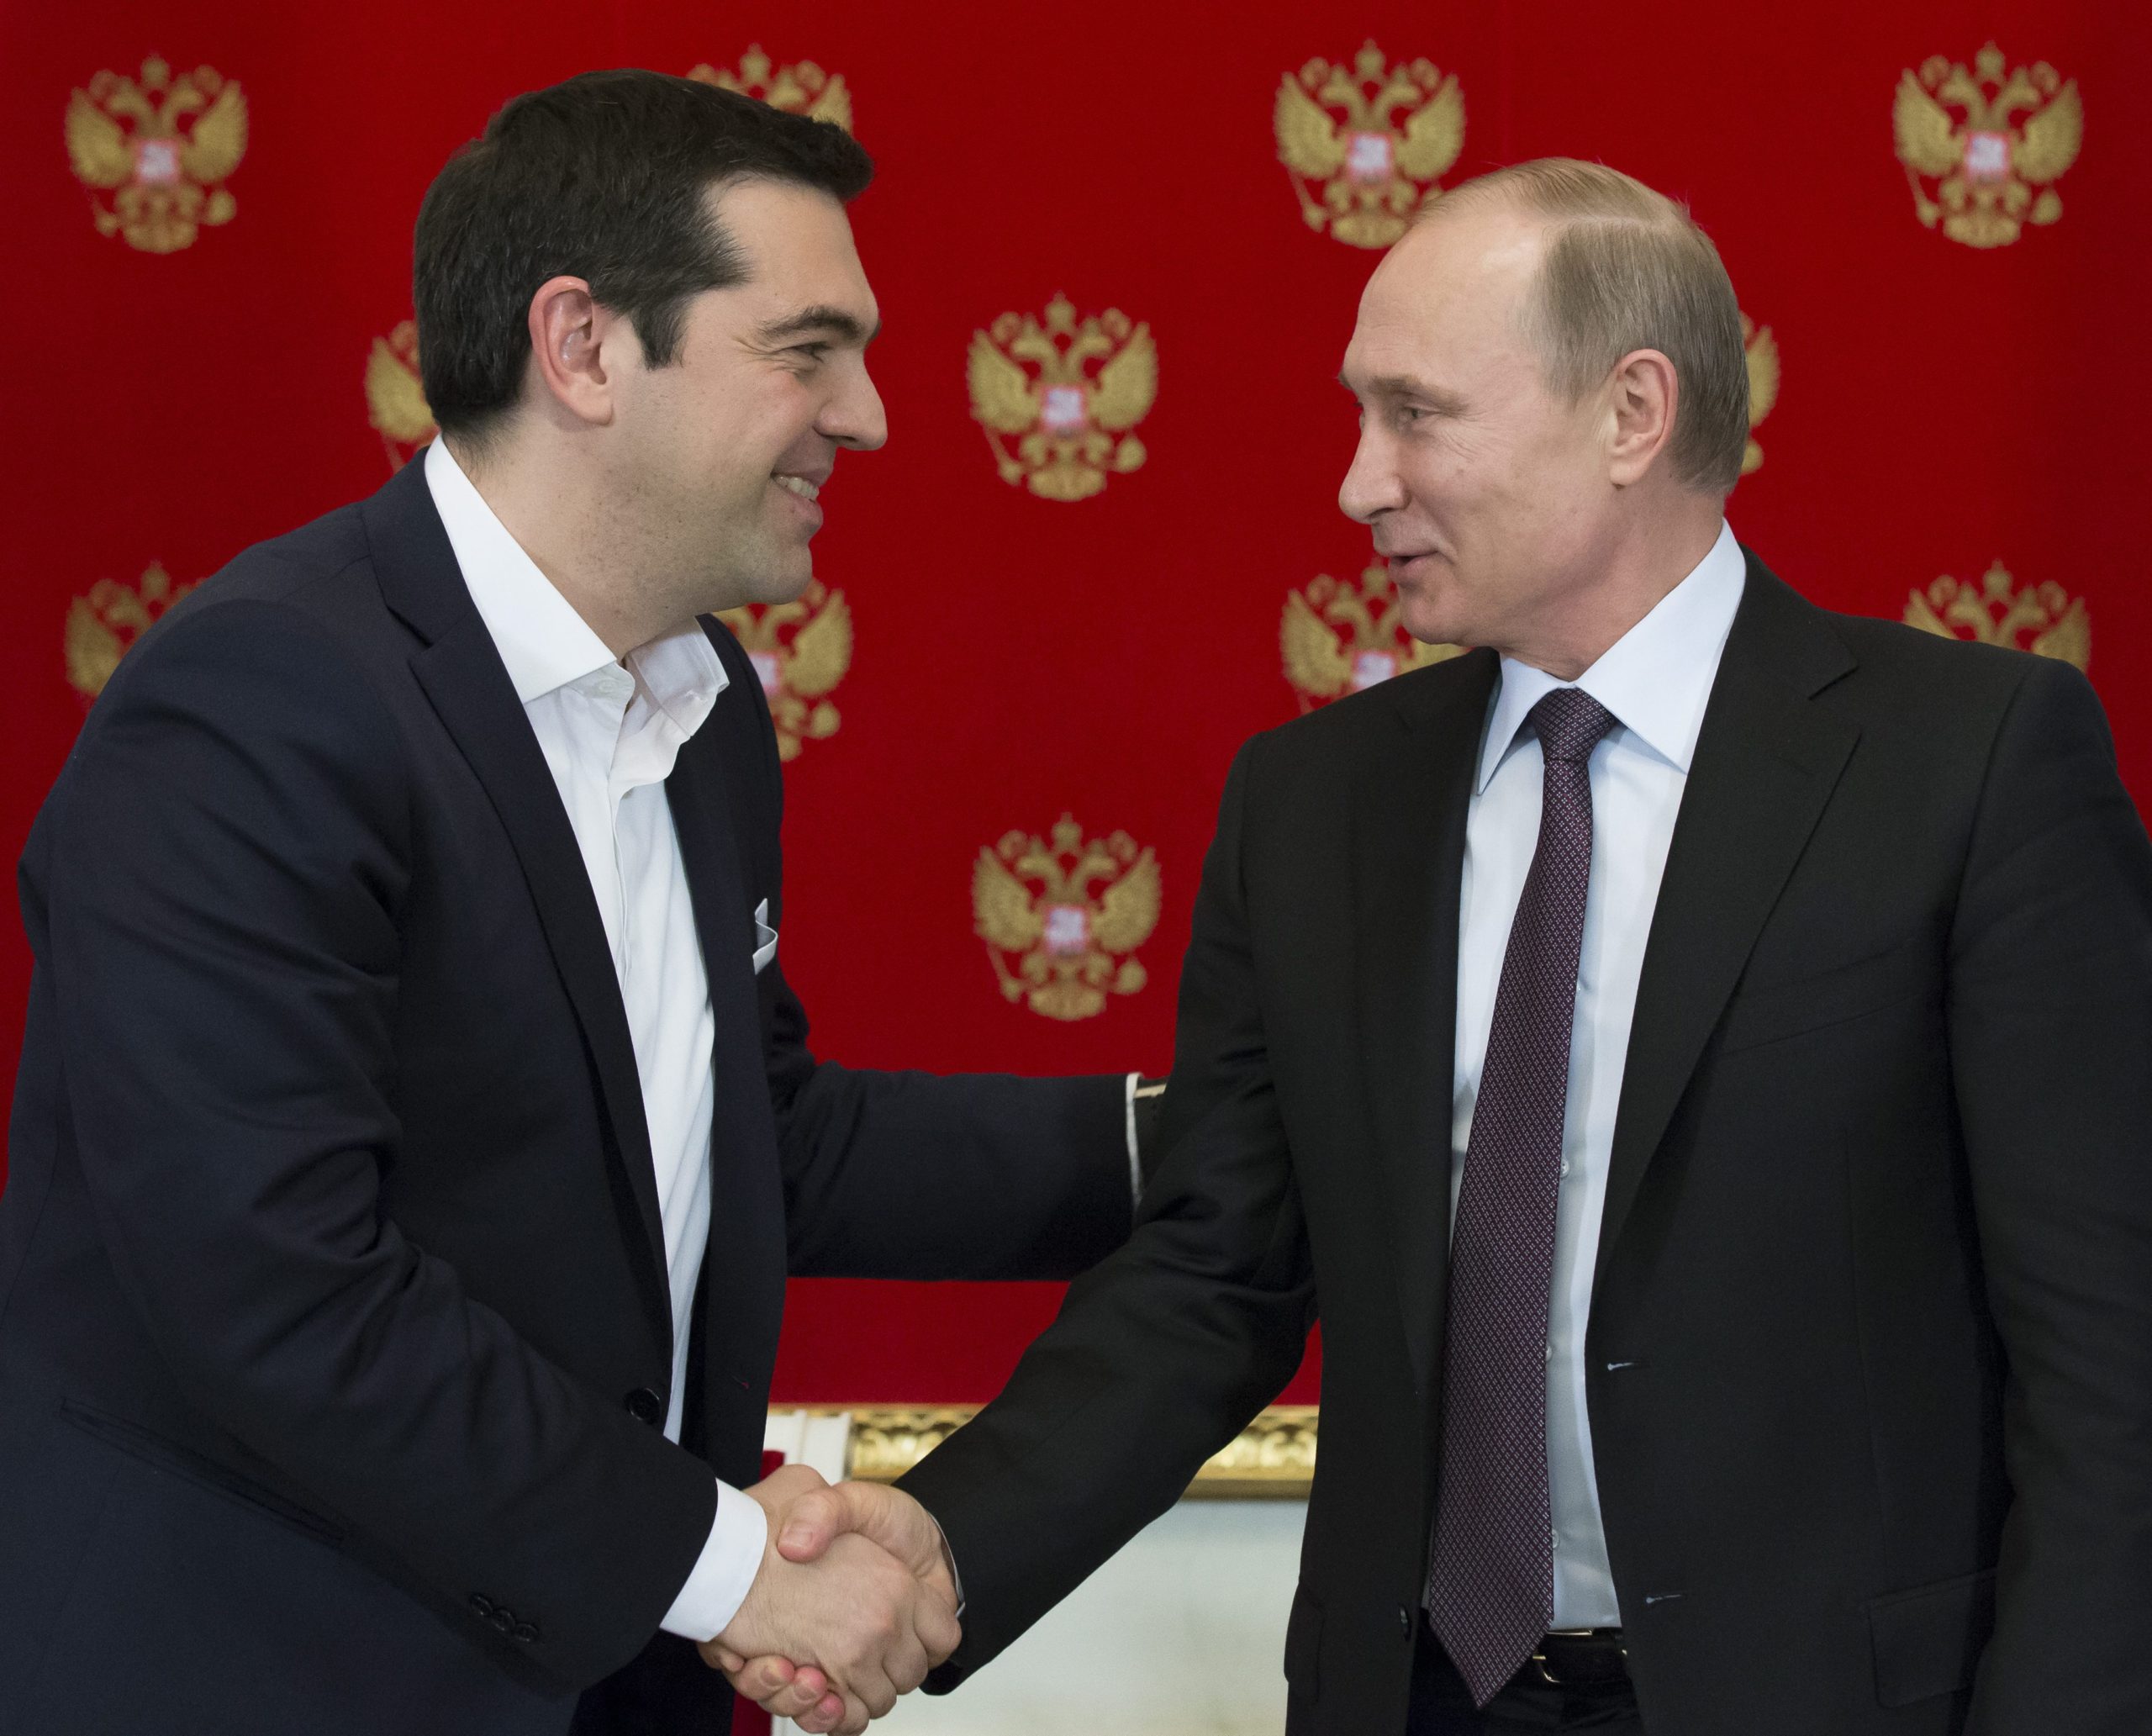 Τσίπρας και Πούτιν θα συζητήσουν για την ελληνική οικονομία και τον αγωγό